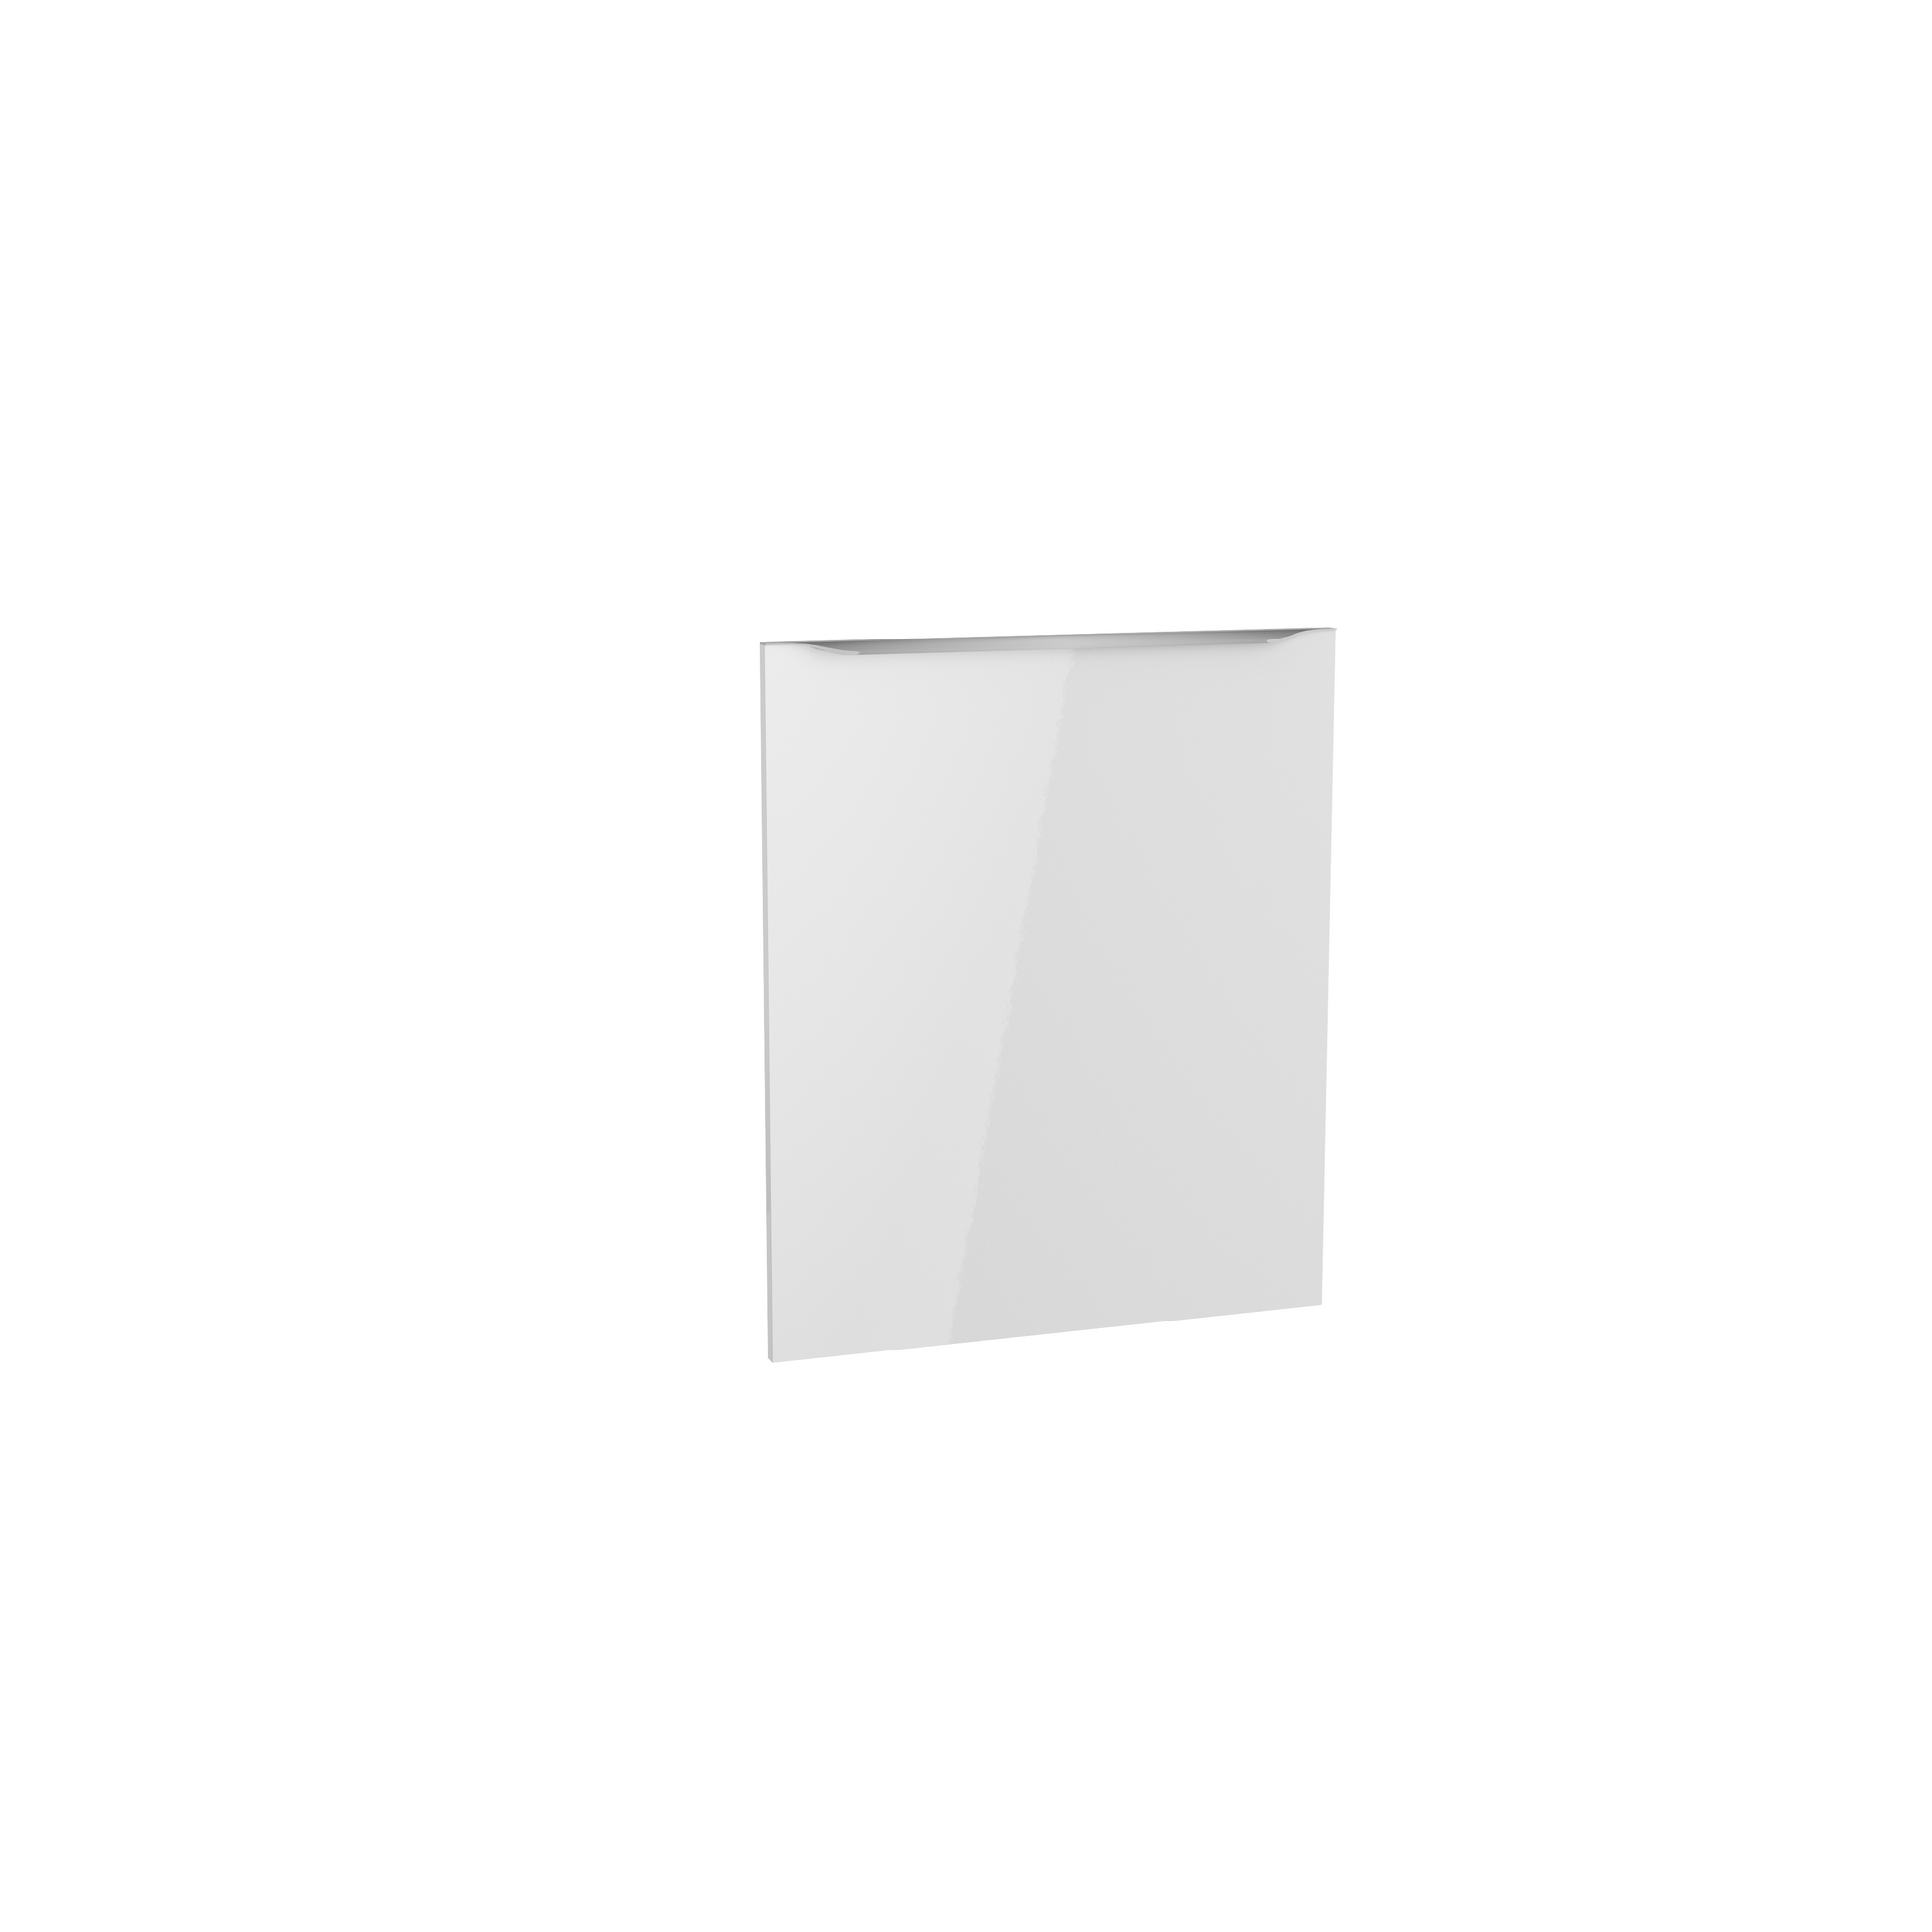 Tür für vollintegrierten Geschirrspüler 'Optikomfort Arvid986' weiß 59,6 x 70 x 1,6 cm + product picture